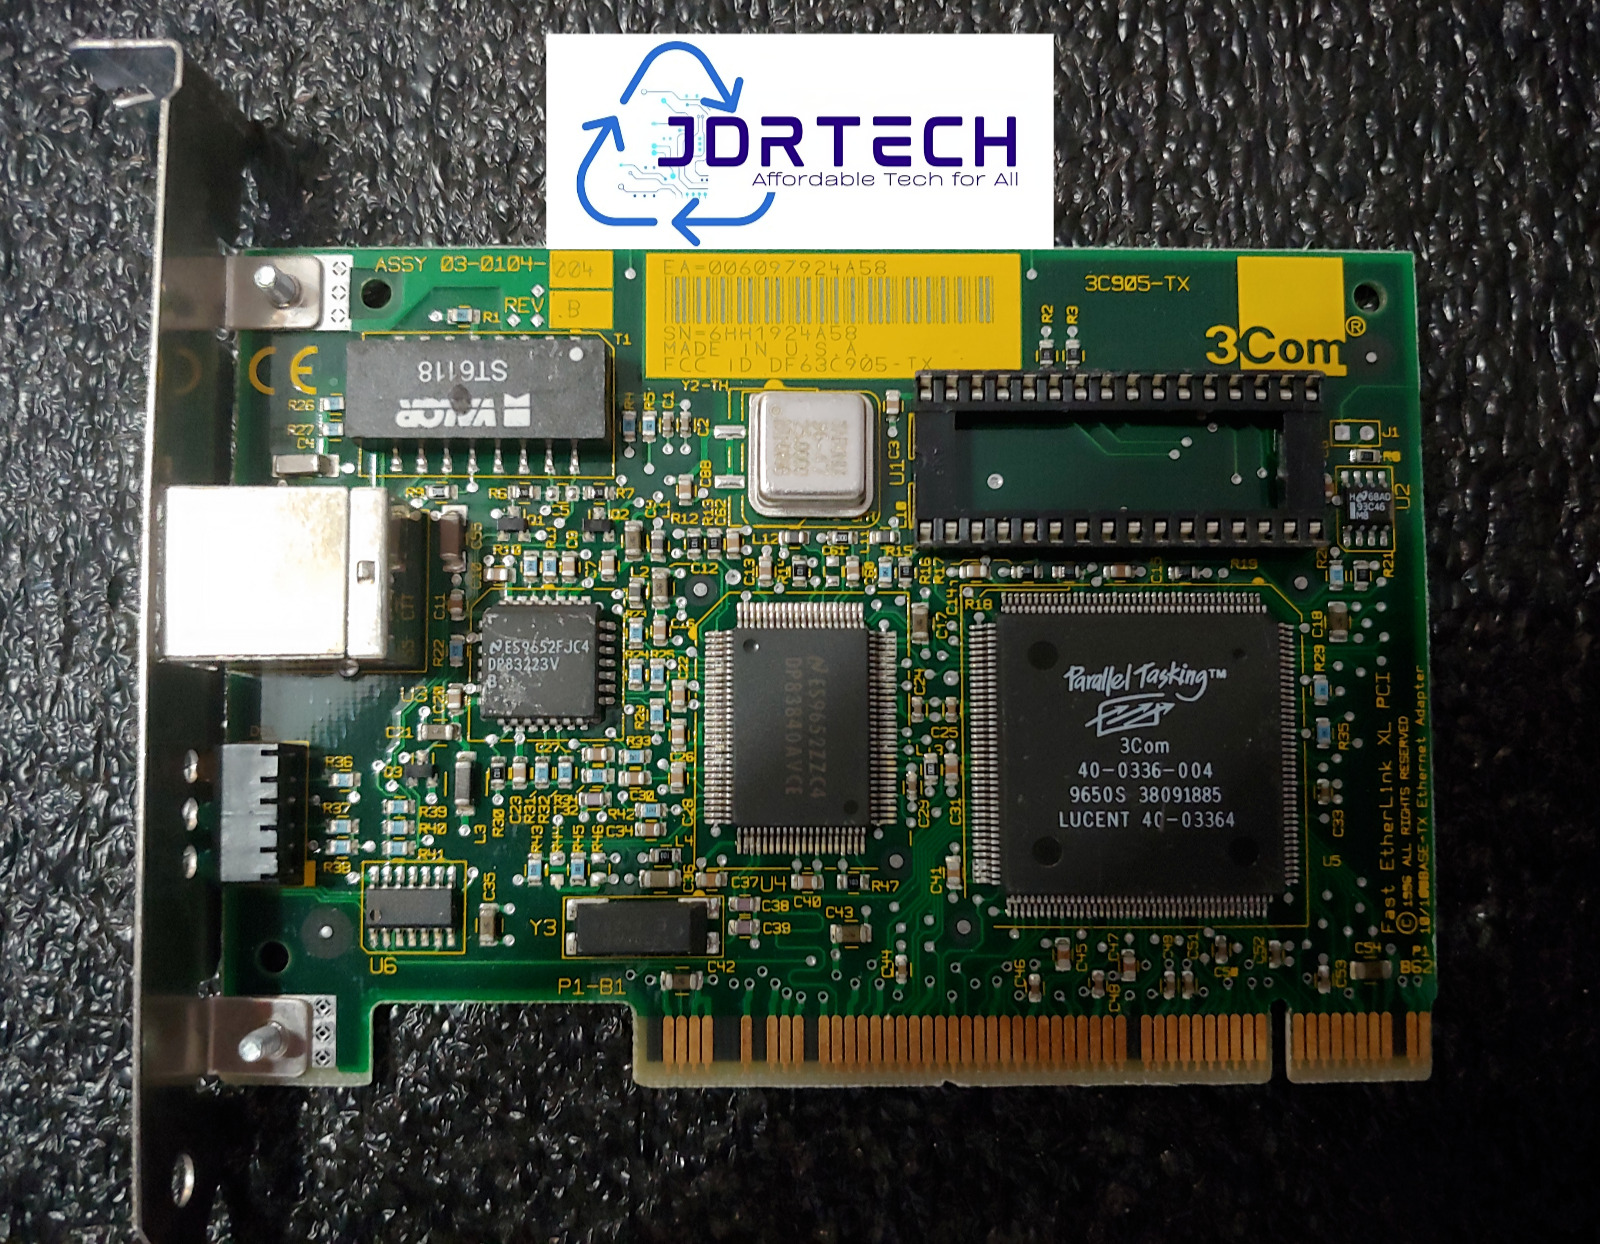 3Com 3C905-TXM Etherlink 10/100 Parallel Tasking PCI Fast Ethernet Card Tested